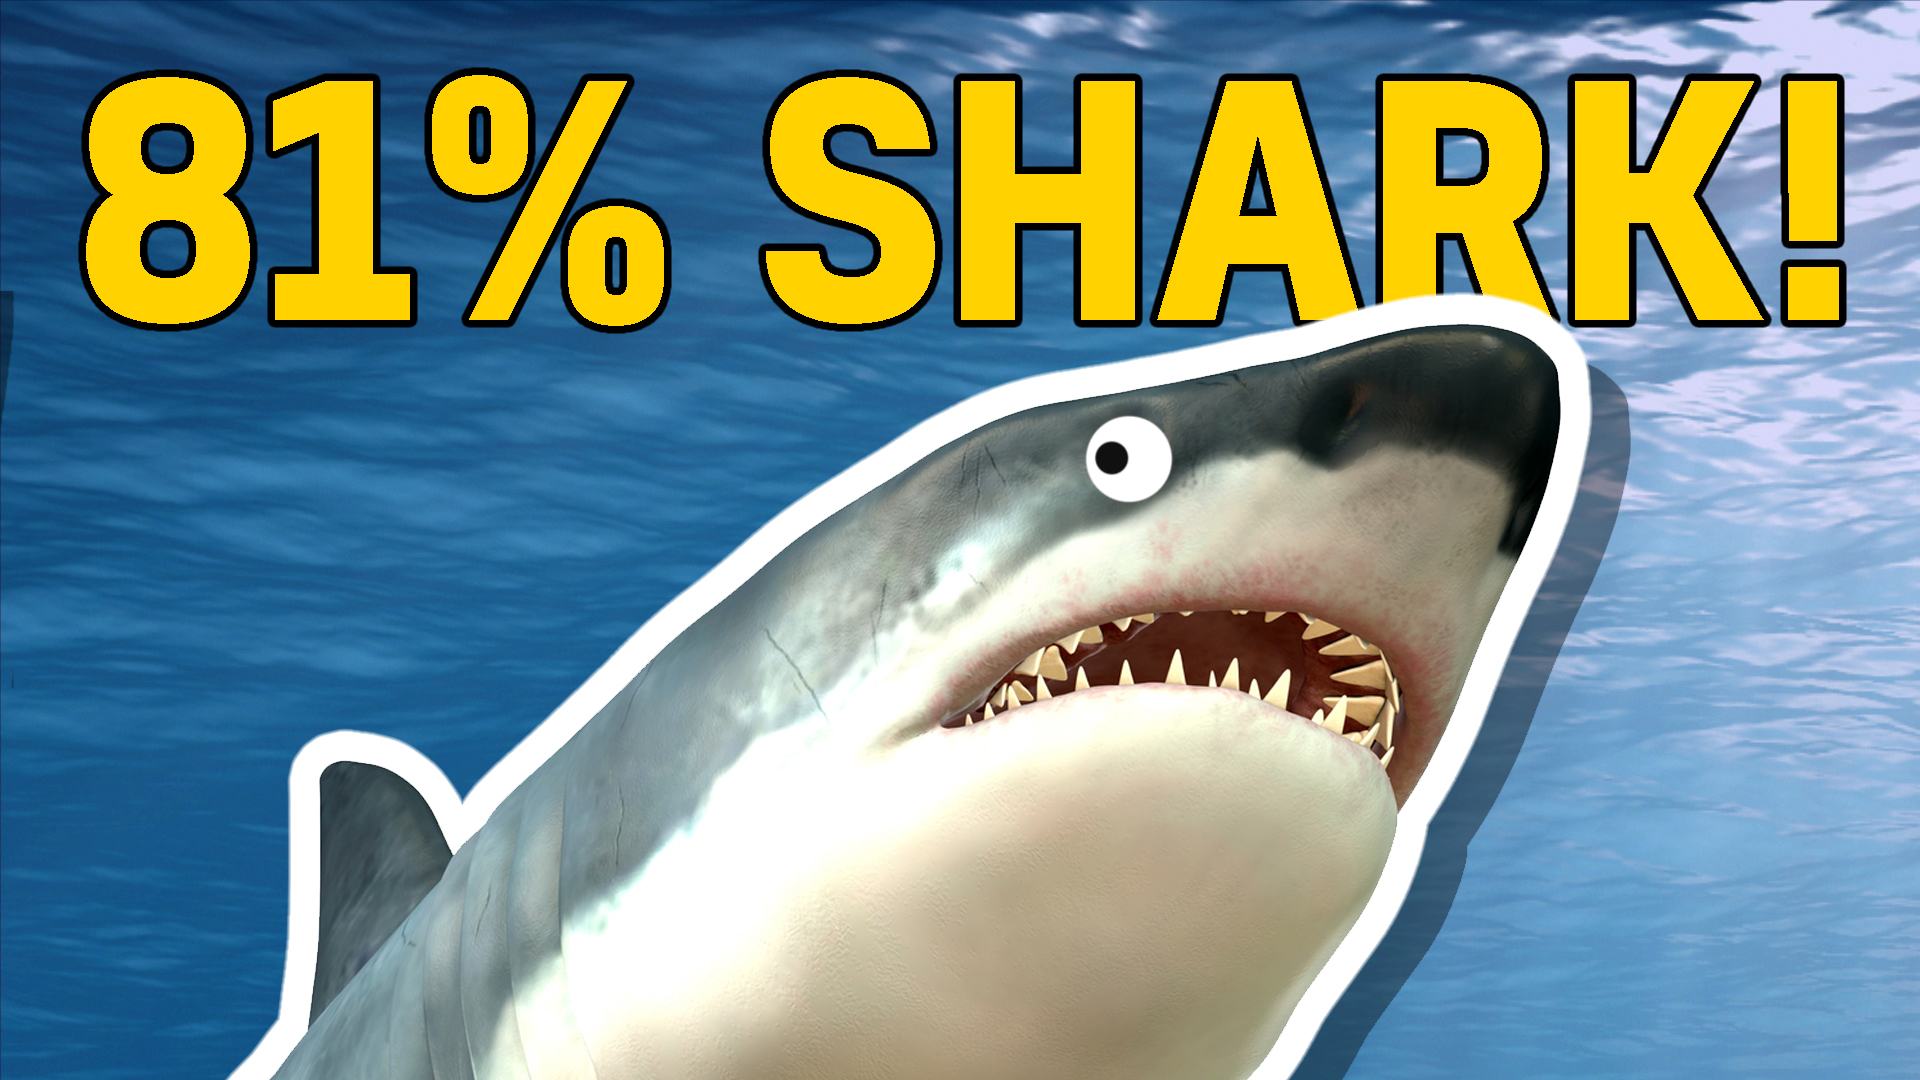 81% shark